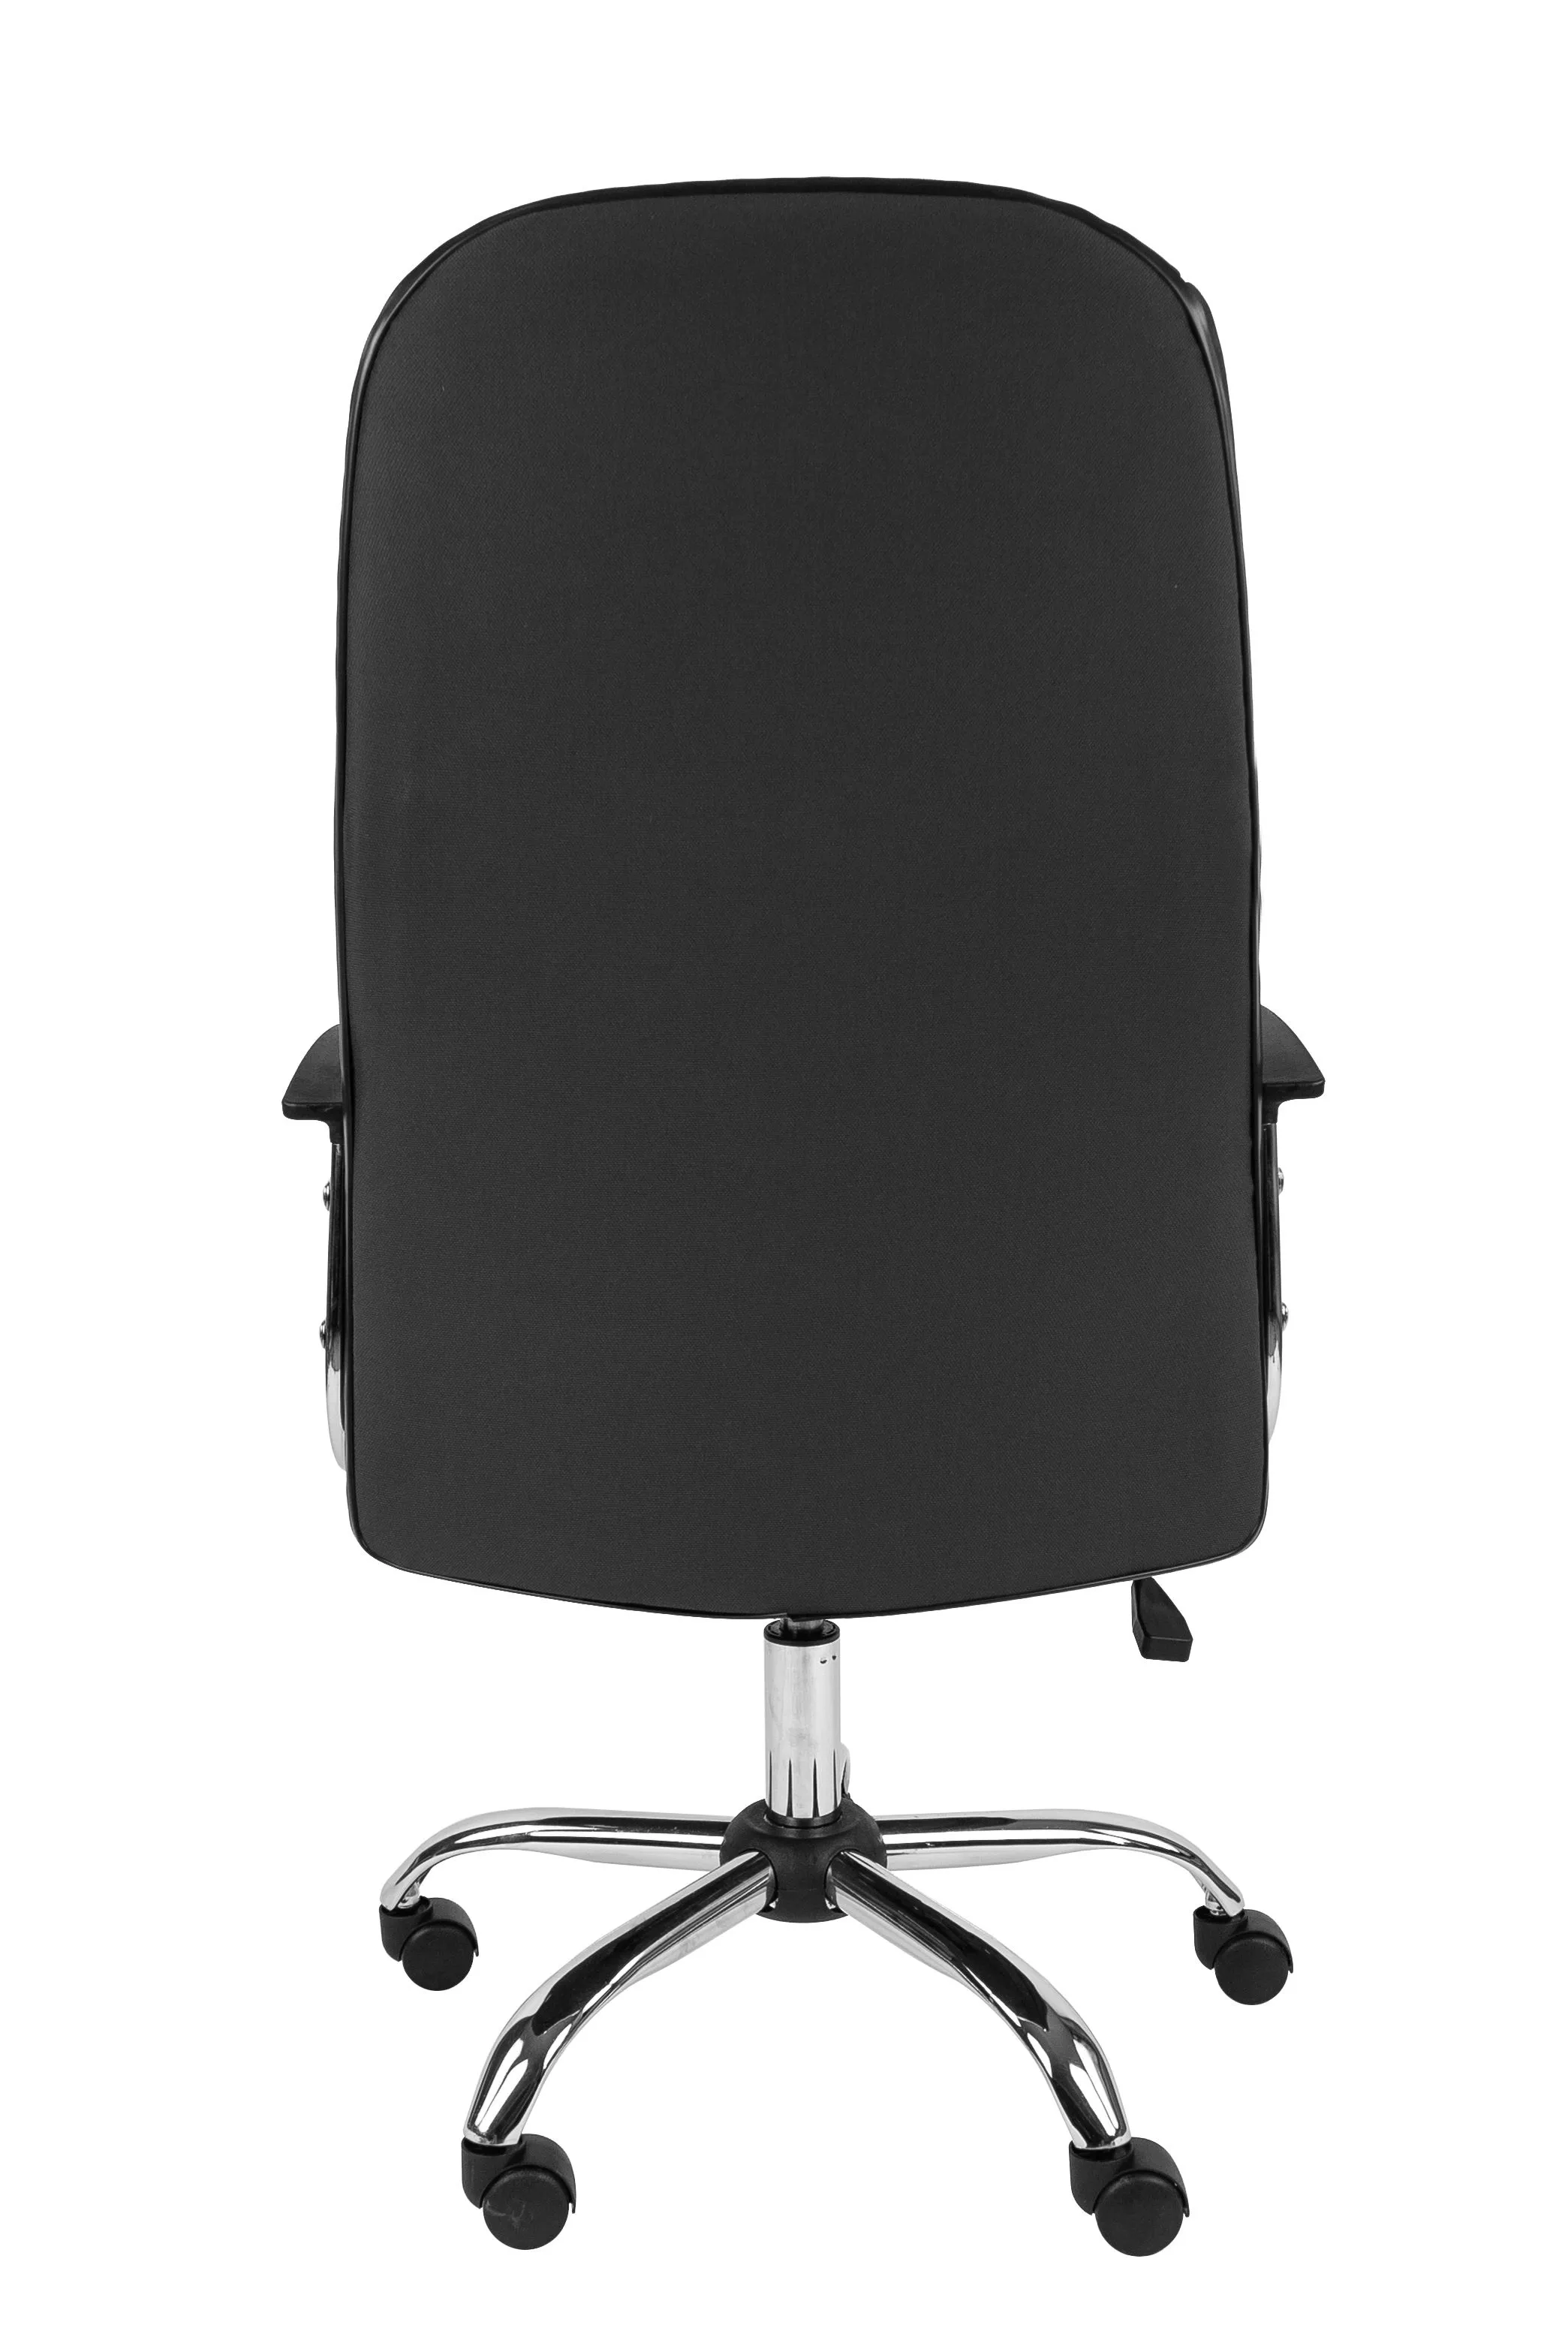 Кресло для персонала Riva Chair RUSSIA 1187-1 S черный